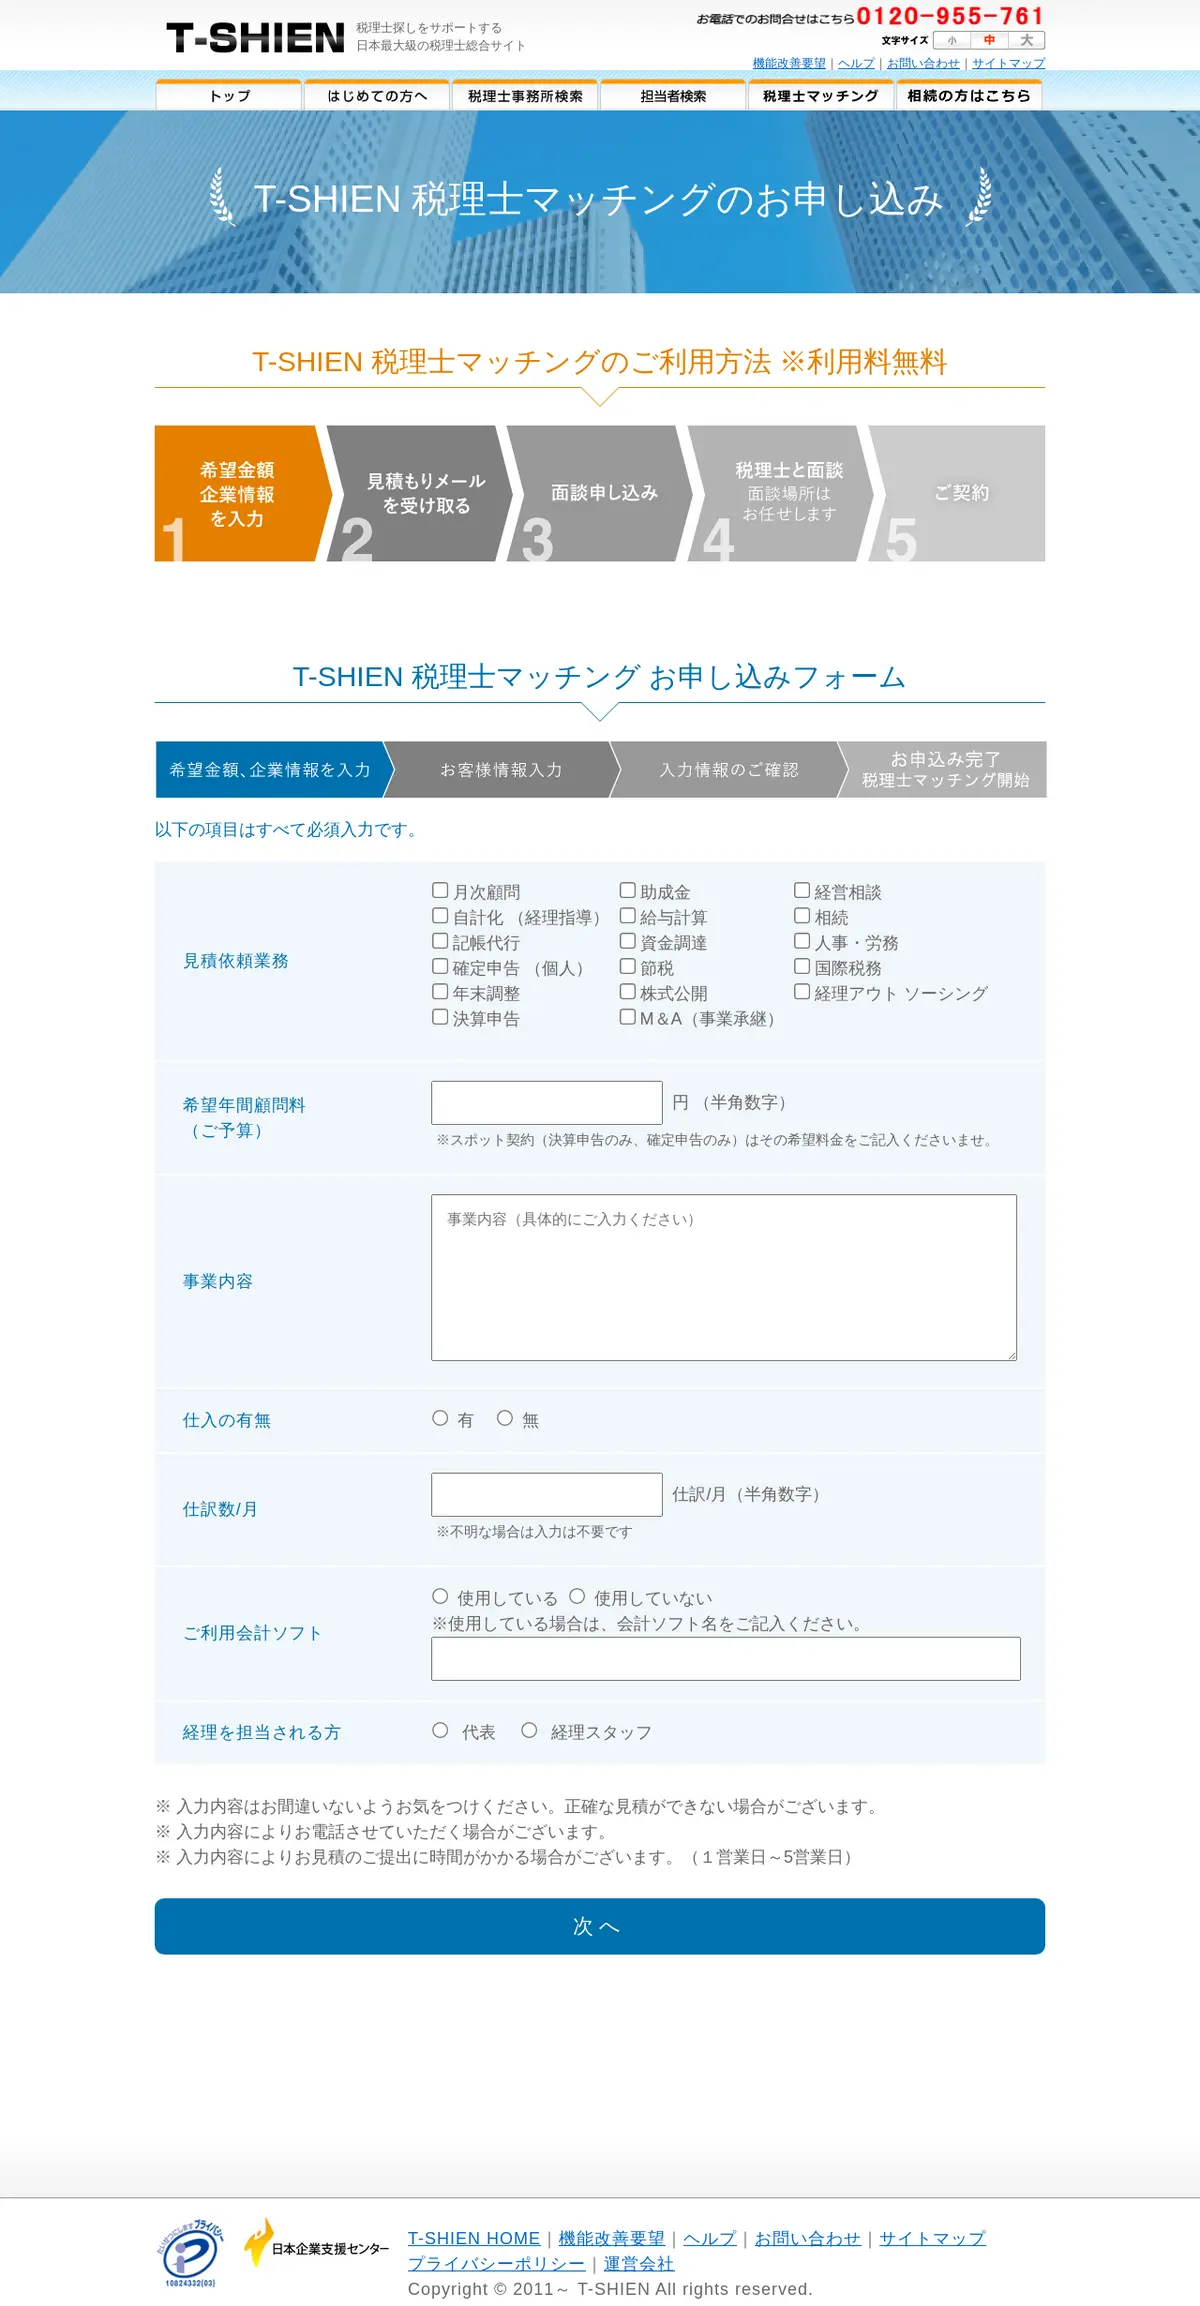 キャプチャ画面 会社名:日本企業支援センター株式会社プロジェクト名:T-SHIEN 画面名:申し込みフォーム デバイス名:PCカテゴリ:WEB・インターネットタグ:PC,申し込みフォーム